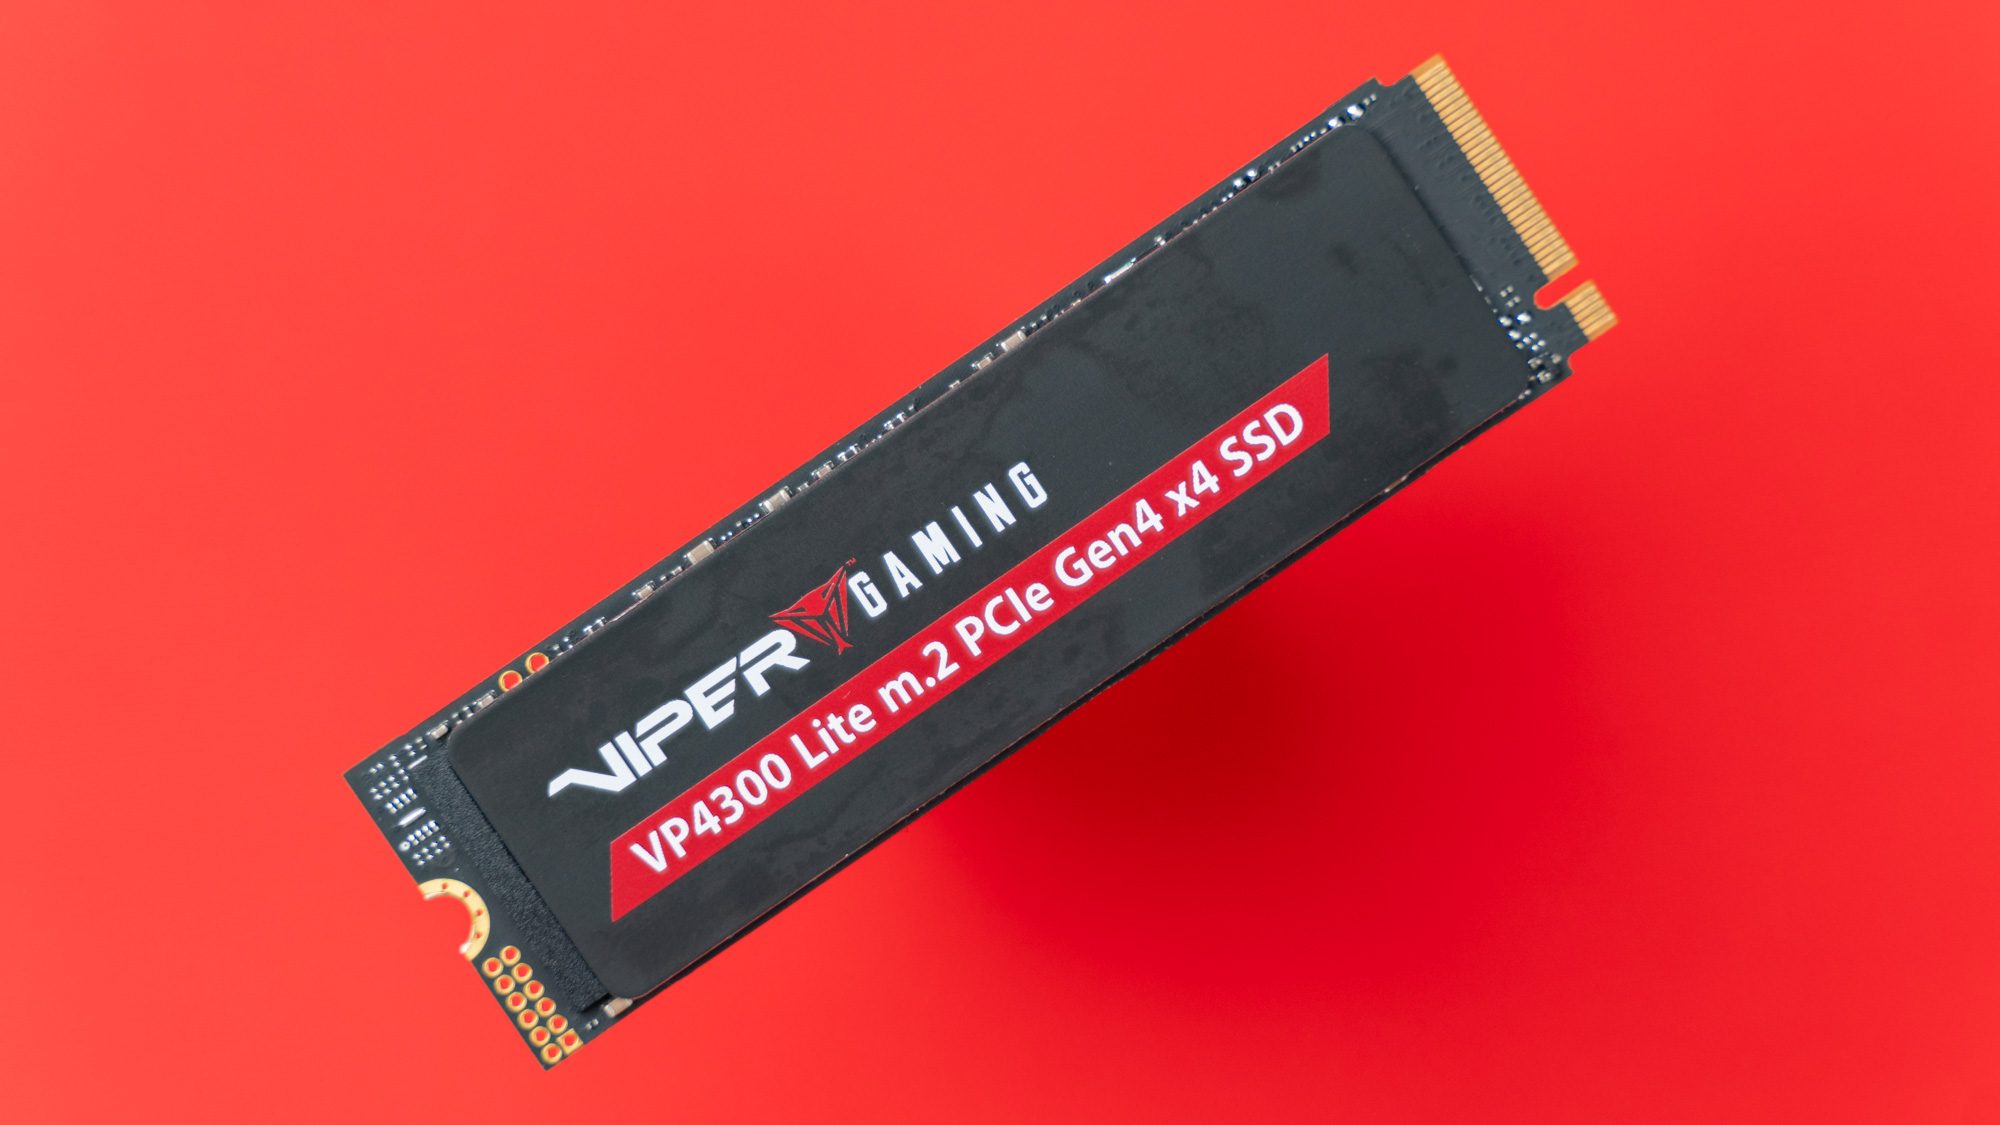 Die Front der Viper Gaming SSD im Detail